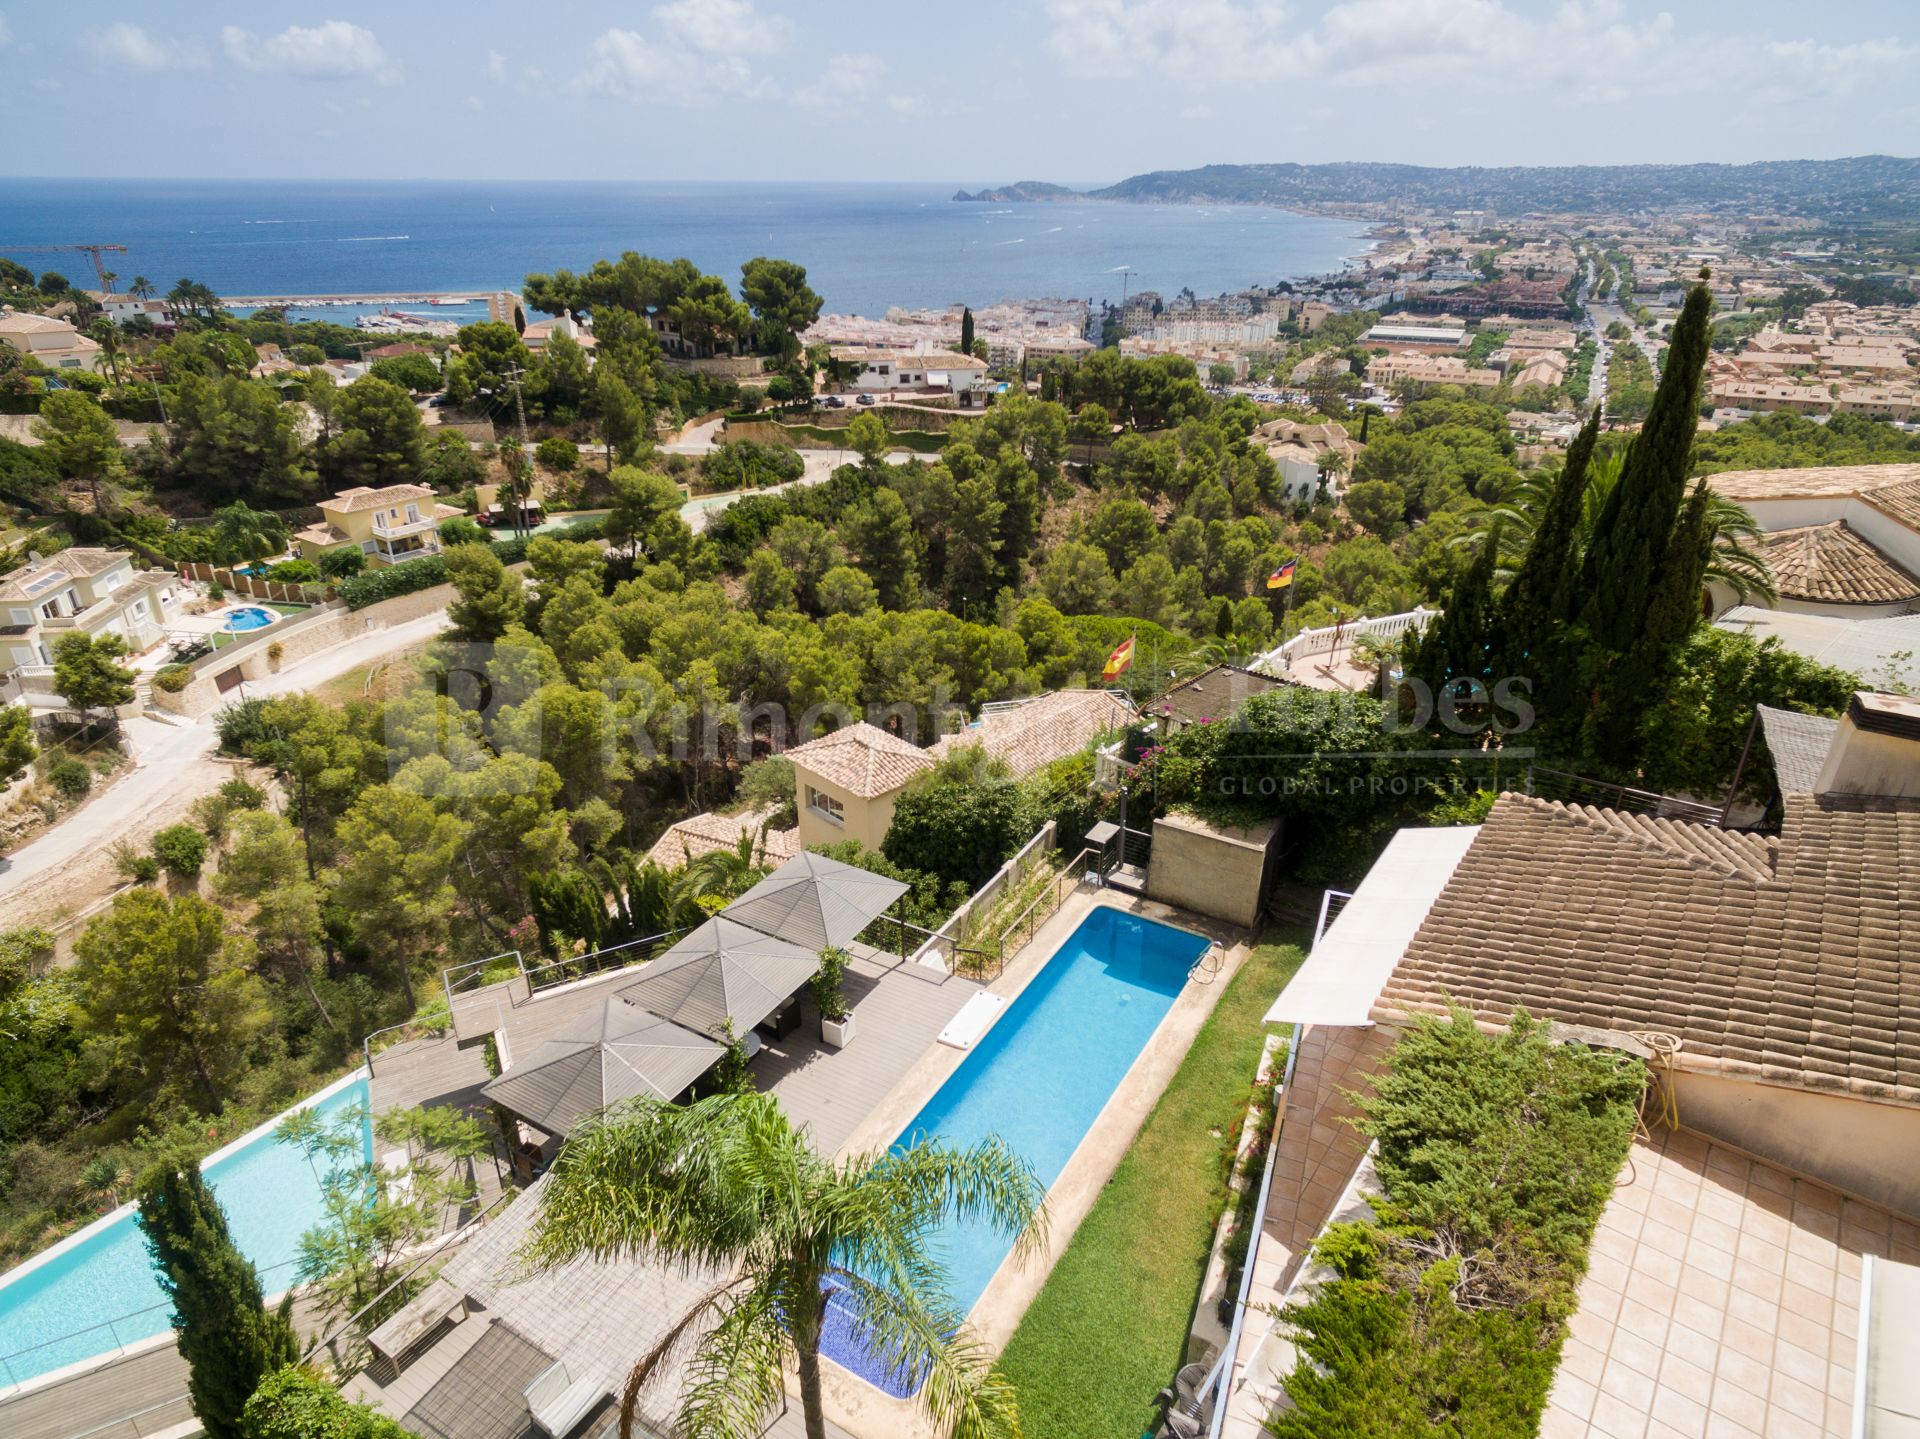 Villa with pool and direct sea views for sale in La Corona, Jávea.